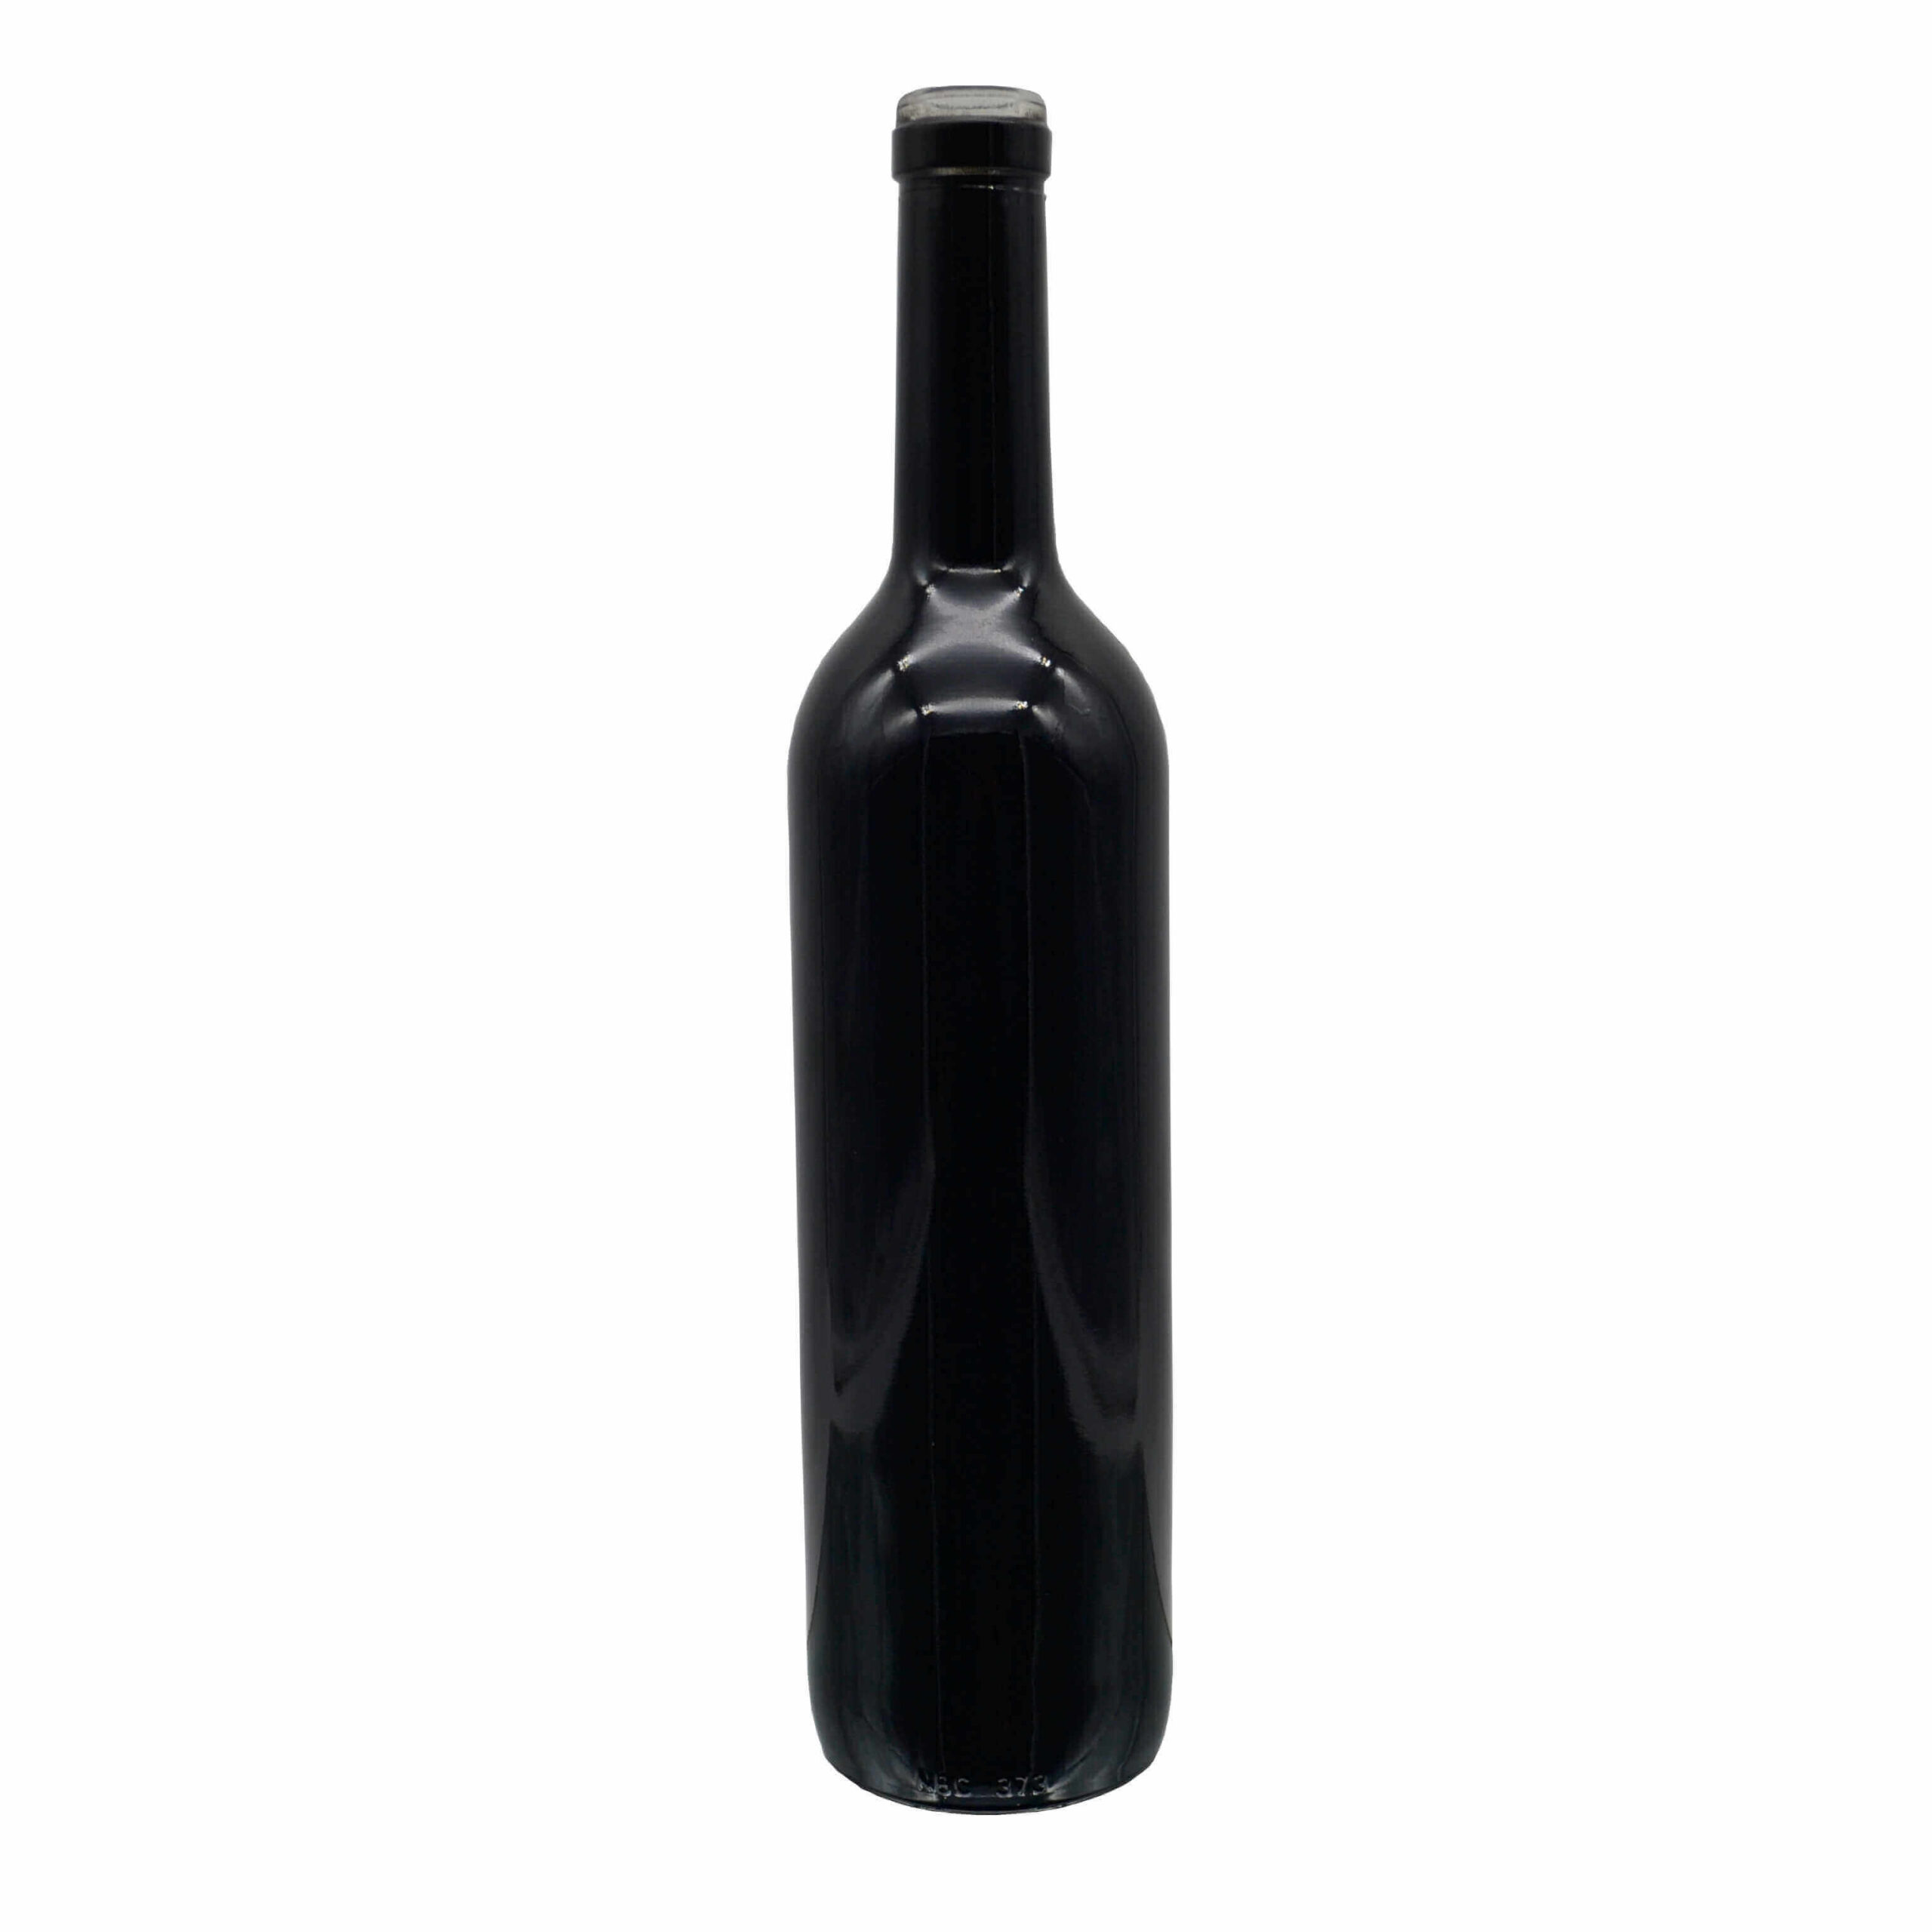 glass wine bottle